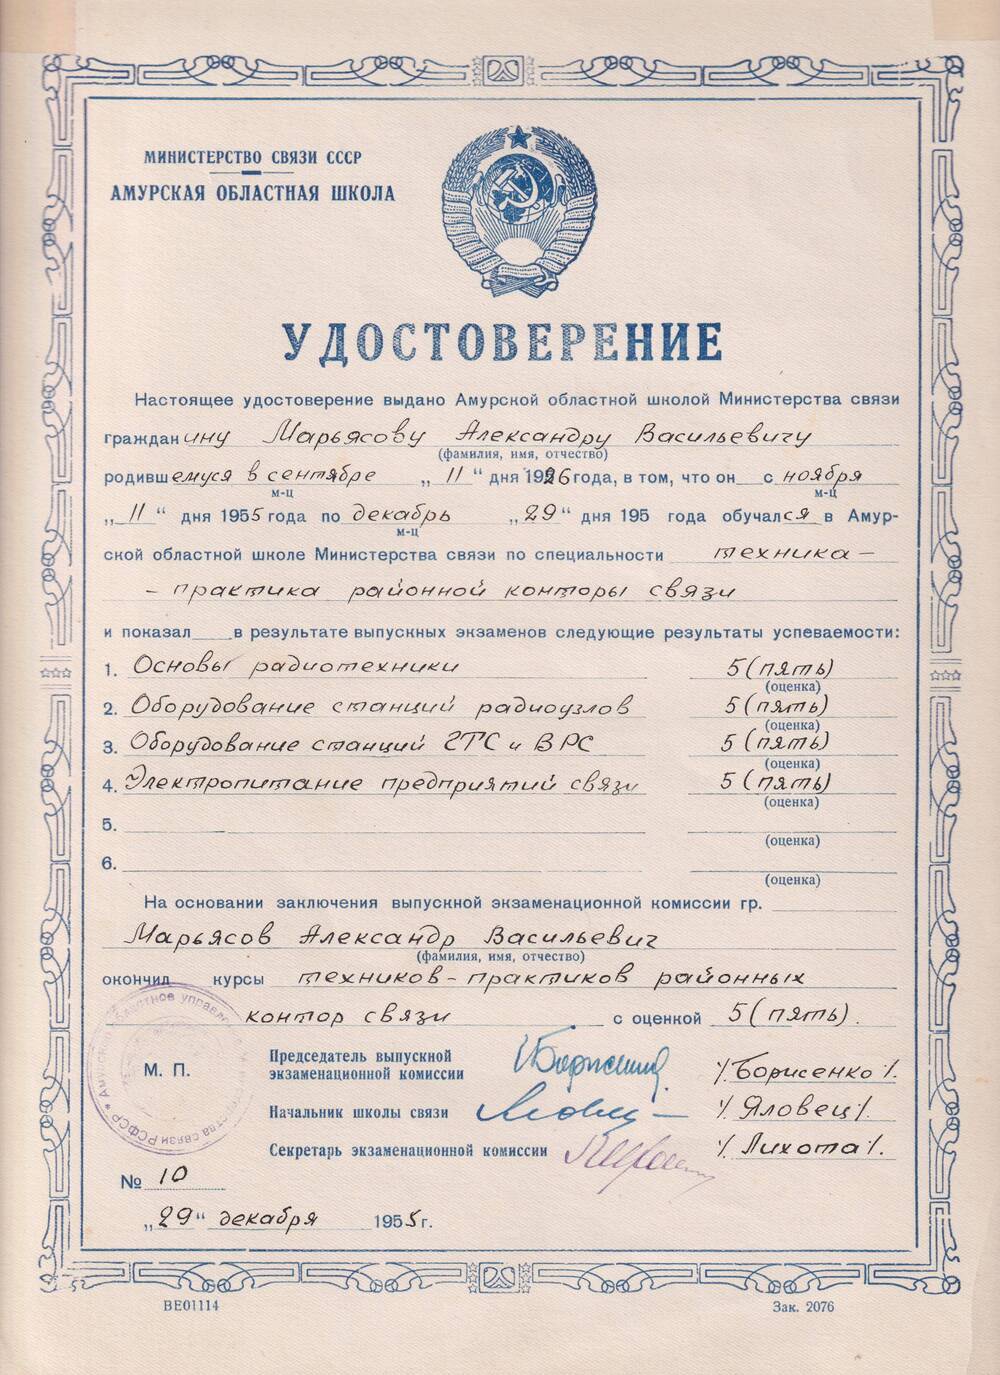 Удостоверение Марьясова  Александра Васильевича об окончании Амурской областной  школы  Министерства связи.